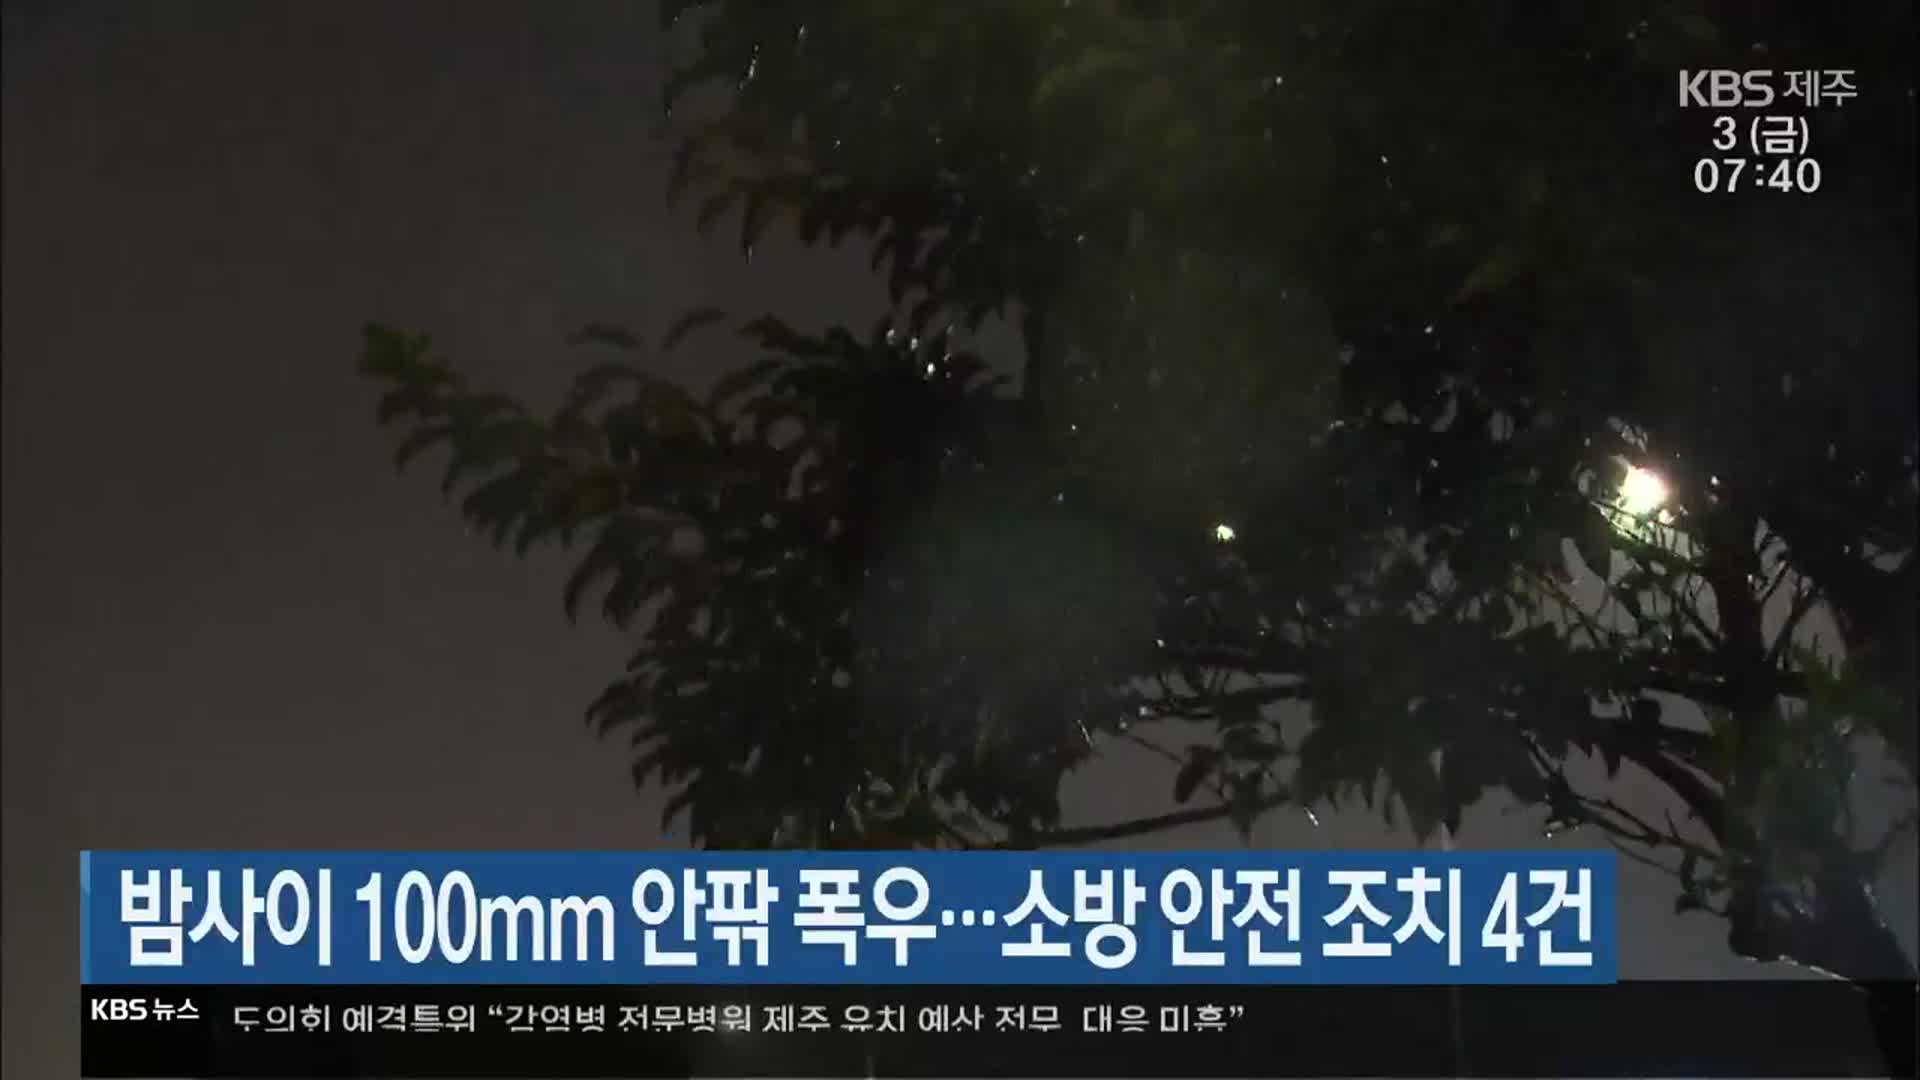 제주 밤사이 100mm 안팎 폭우…소방 안전 조치 4건